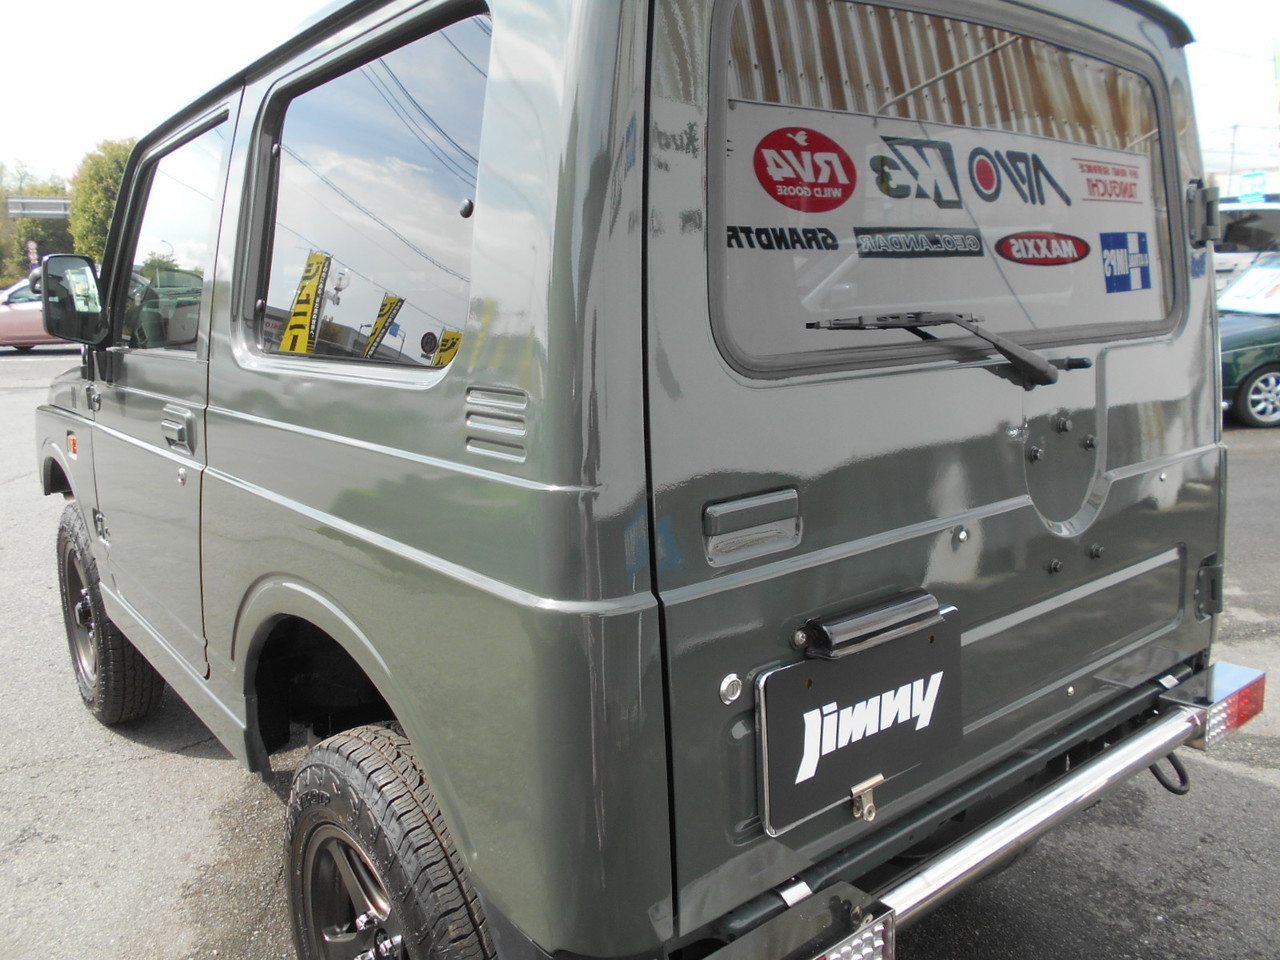 ジムニー JA22 ワイルドウインド 中古車在庫情報 | ジムニー専門店『ジムニースタジオ』